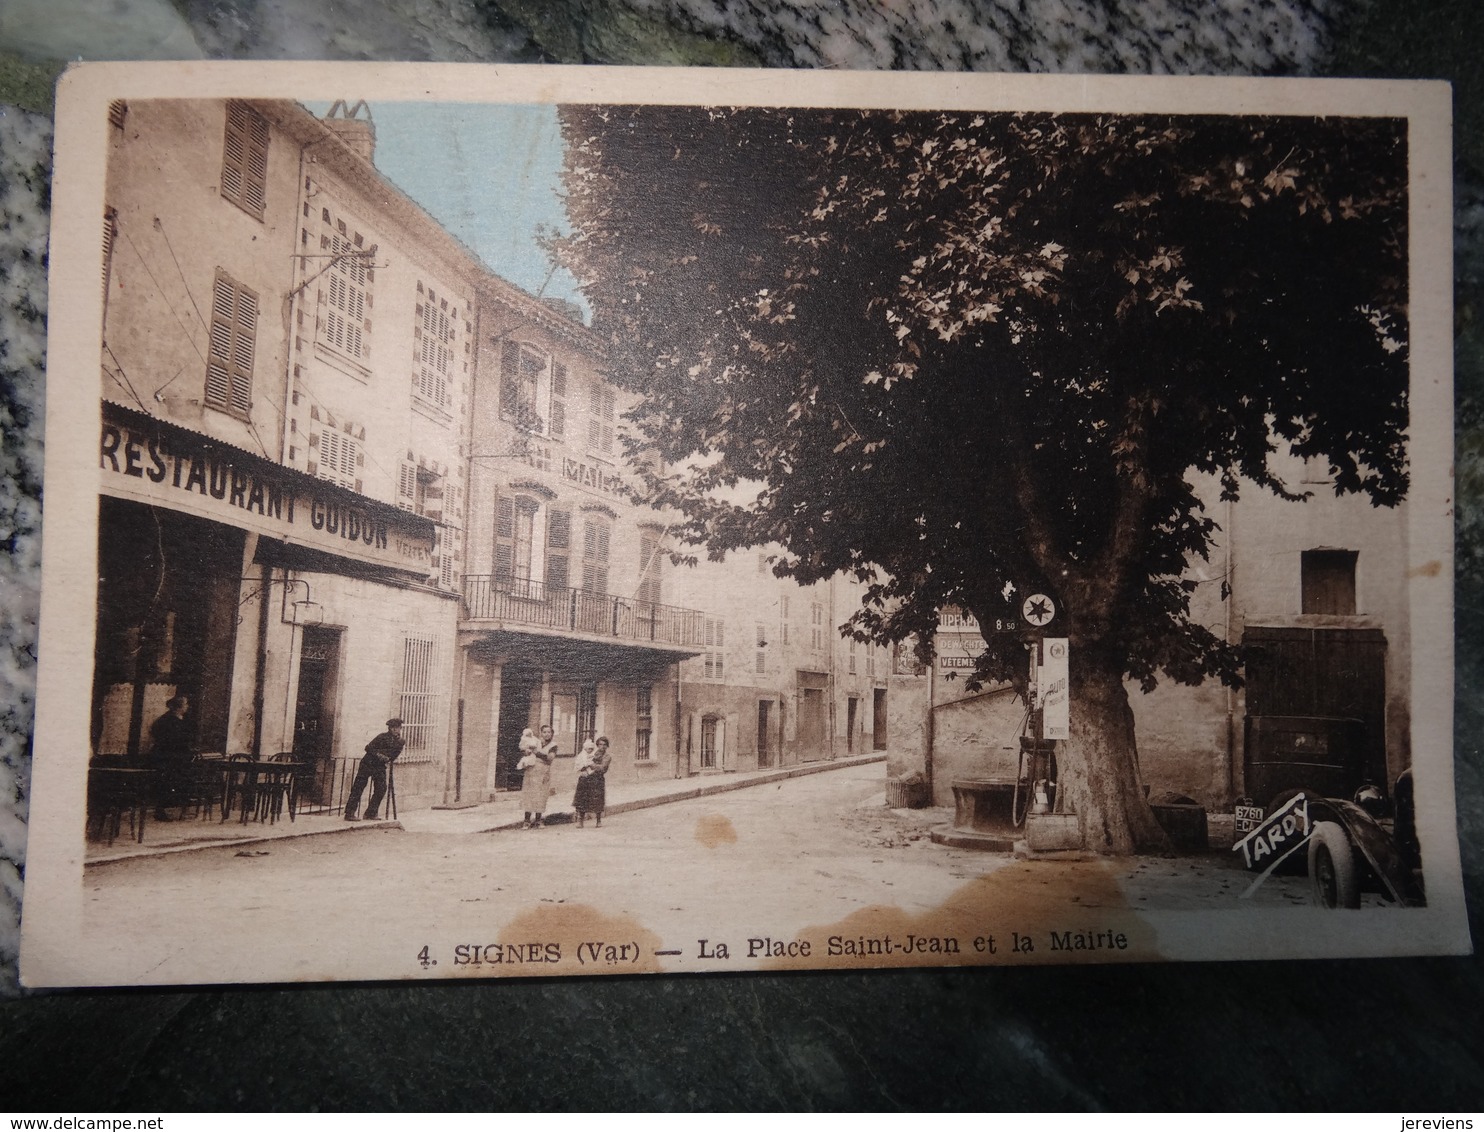 La Place St Jean Et La Mairie Restaurant Guidon 1948 - Signes